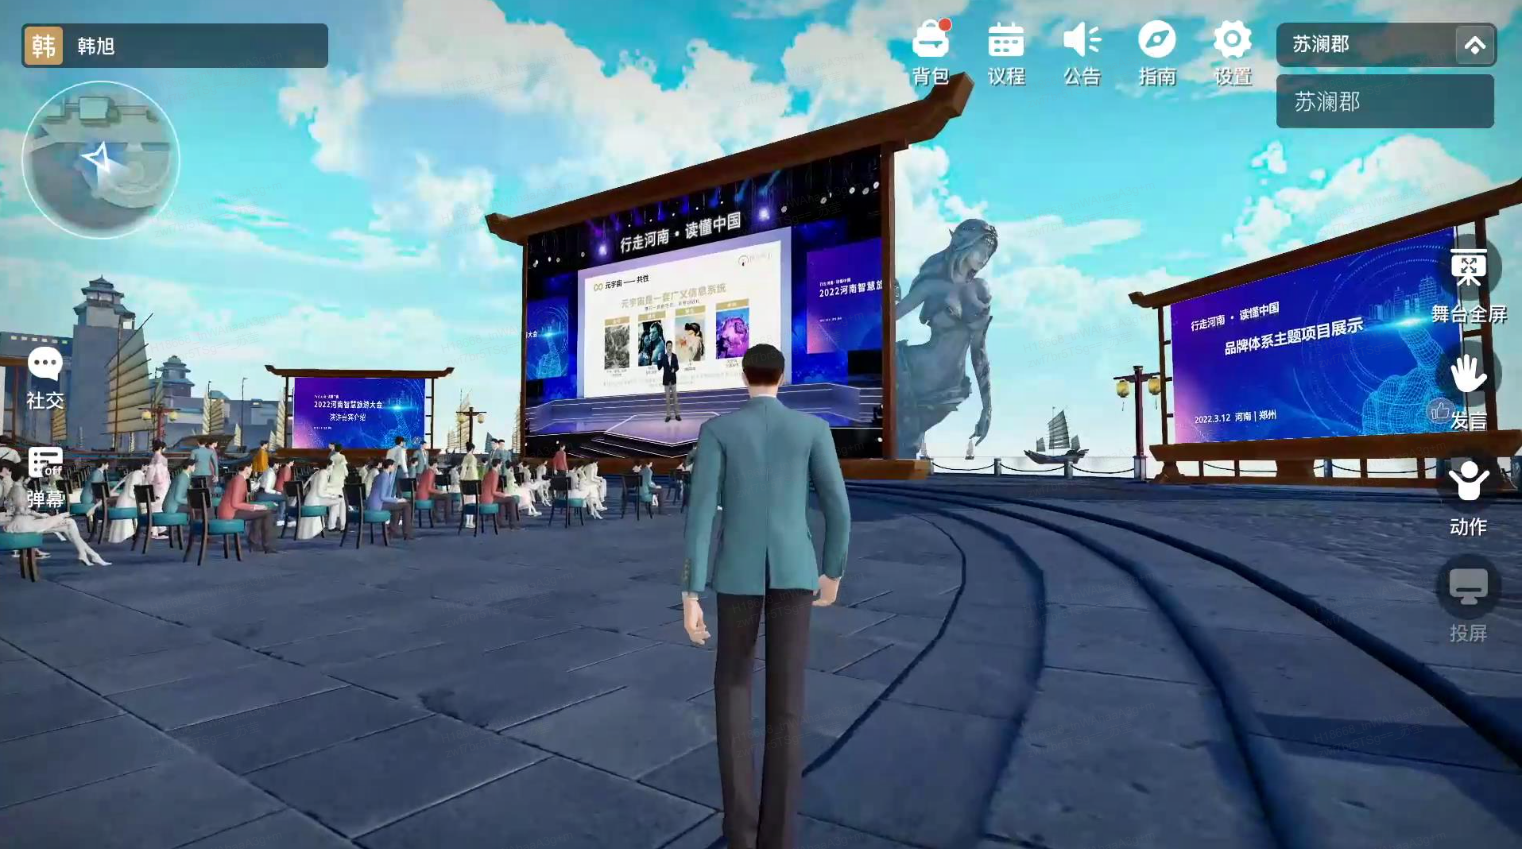 这是一张游戏内截图，展示一个角色背对镜头，面向一个大型户外屏幕和观众席，环境设计现代而又带有东方元素。